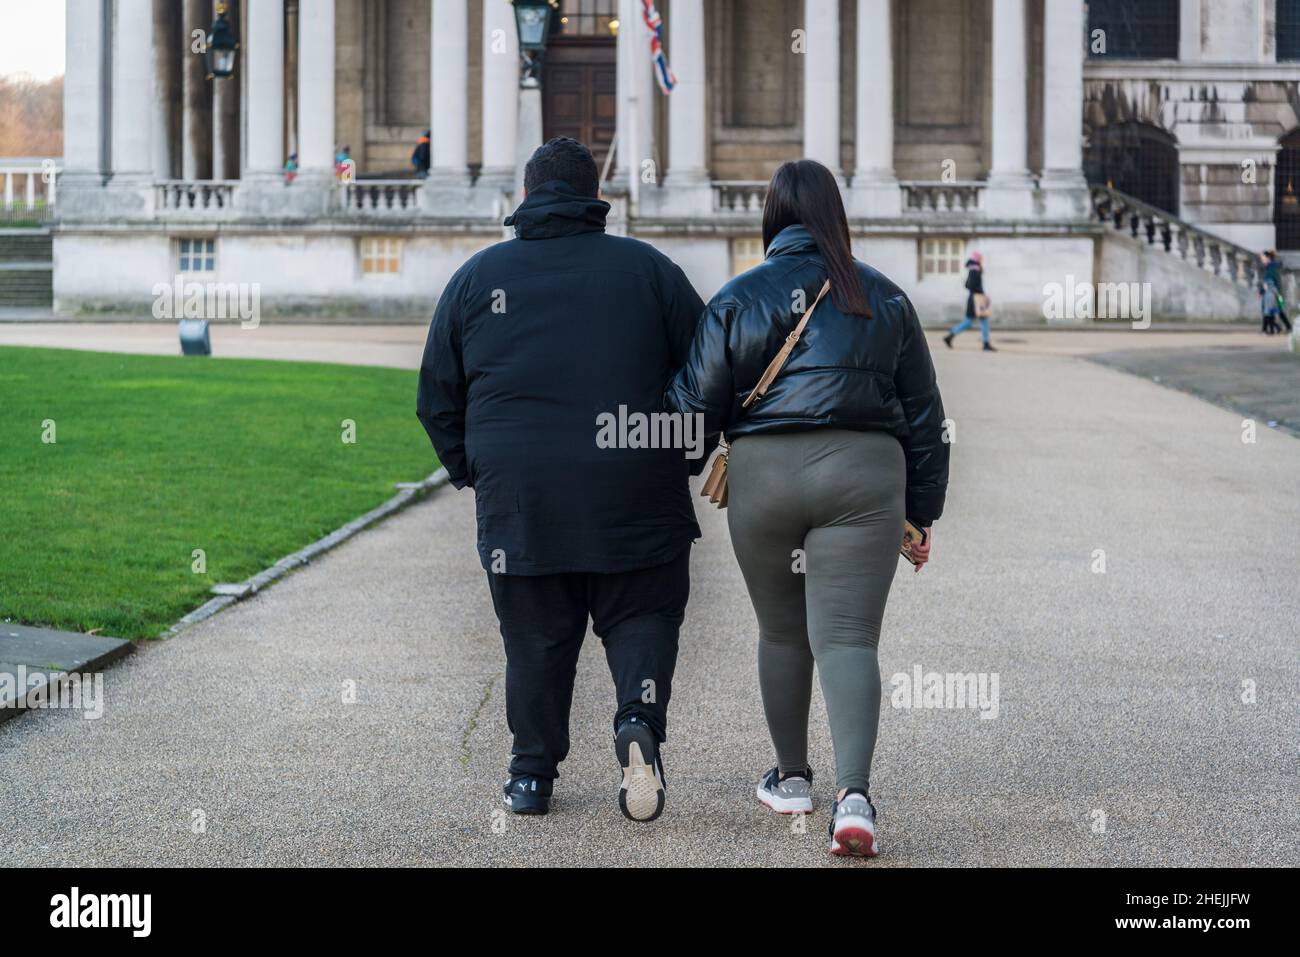 Un couple obèse marchant à Greenwich, Londres, Angleterre, Royaume-Uni Banque D'Images